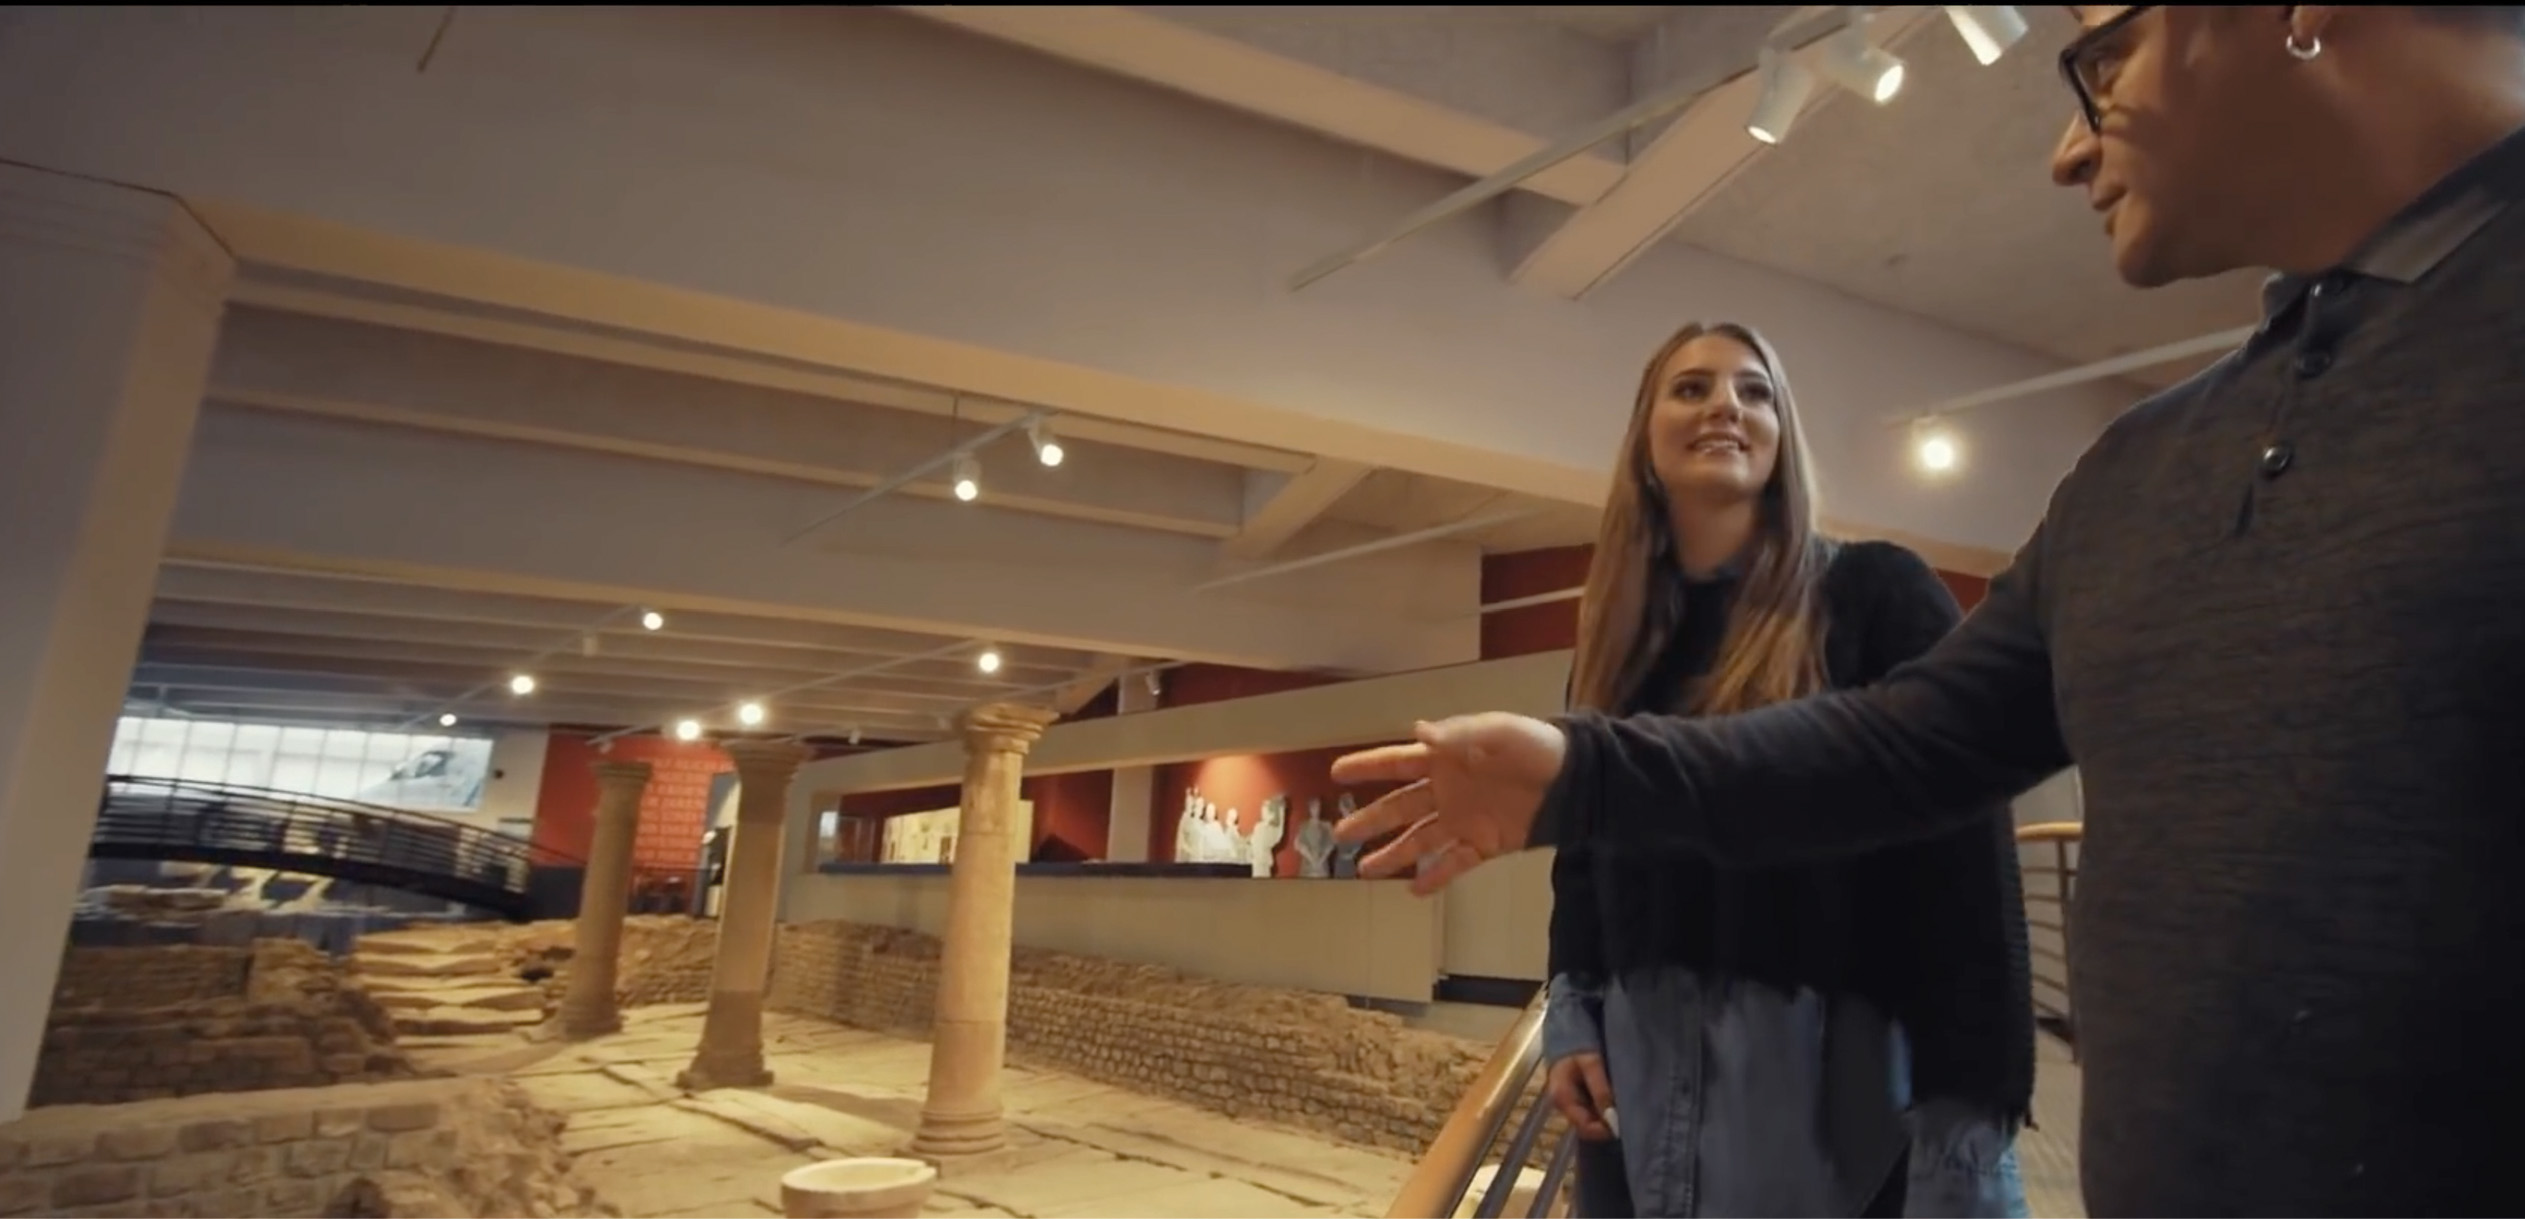 Mann und Frau im römischen Museum